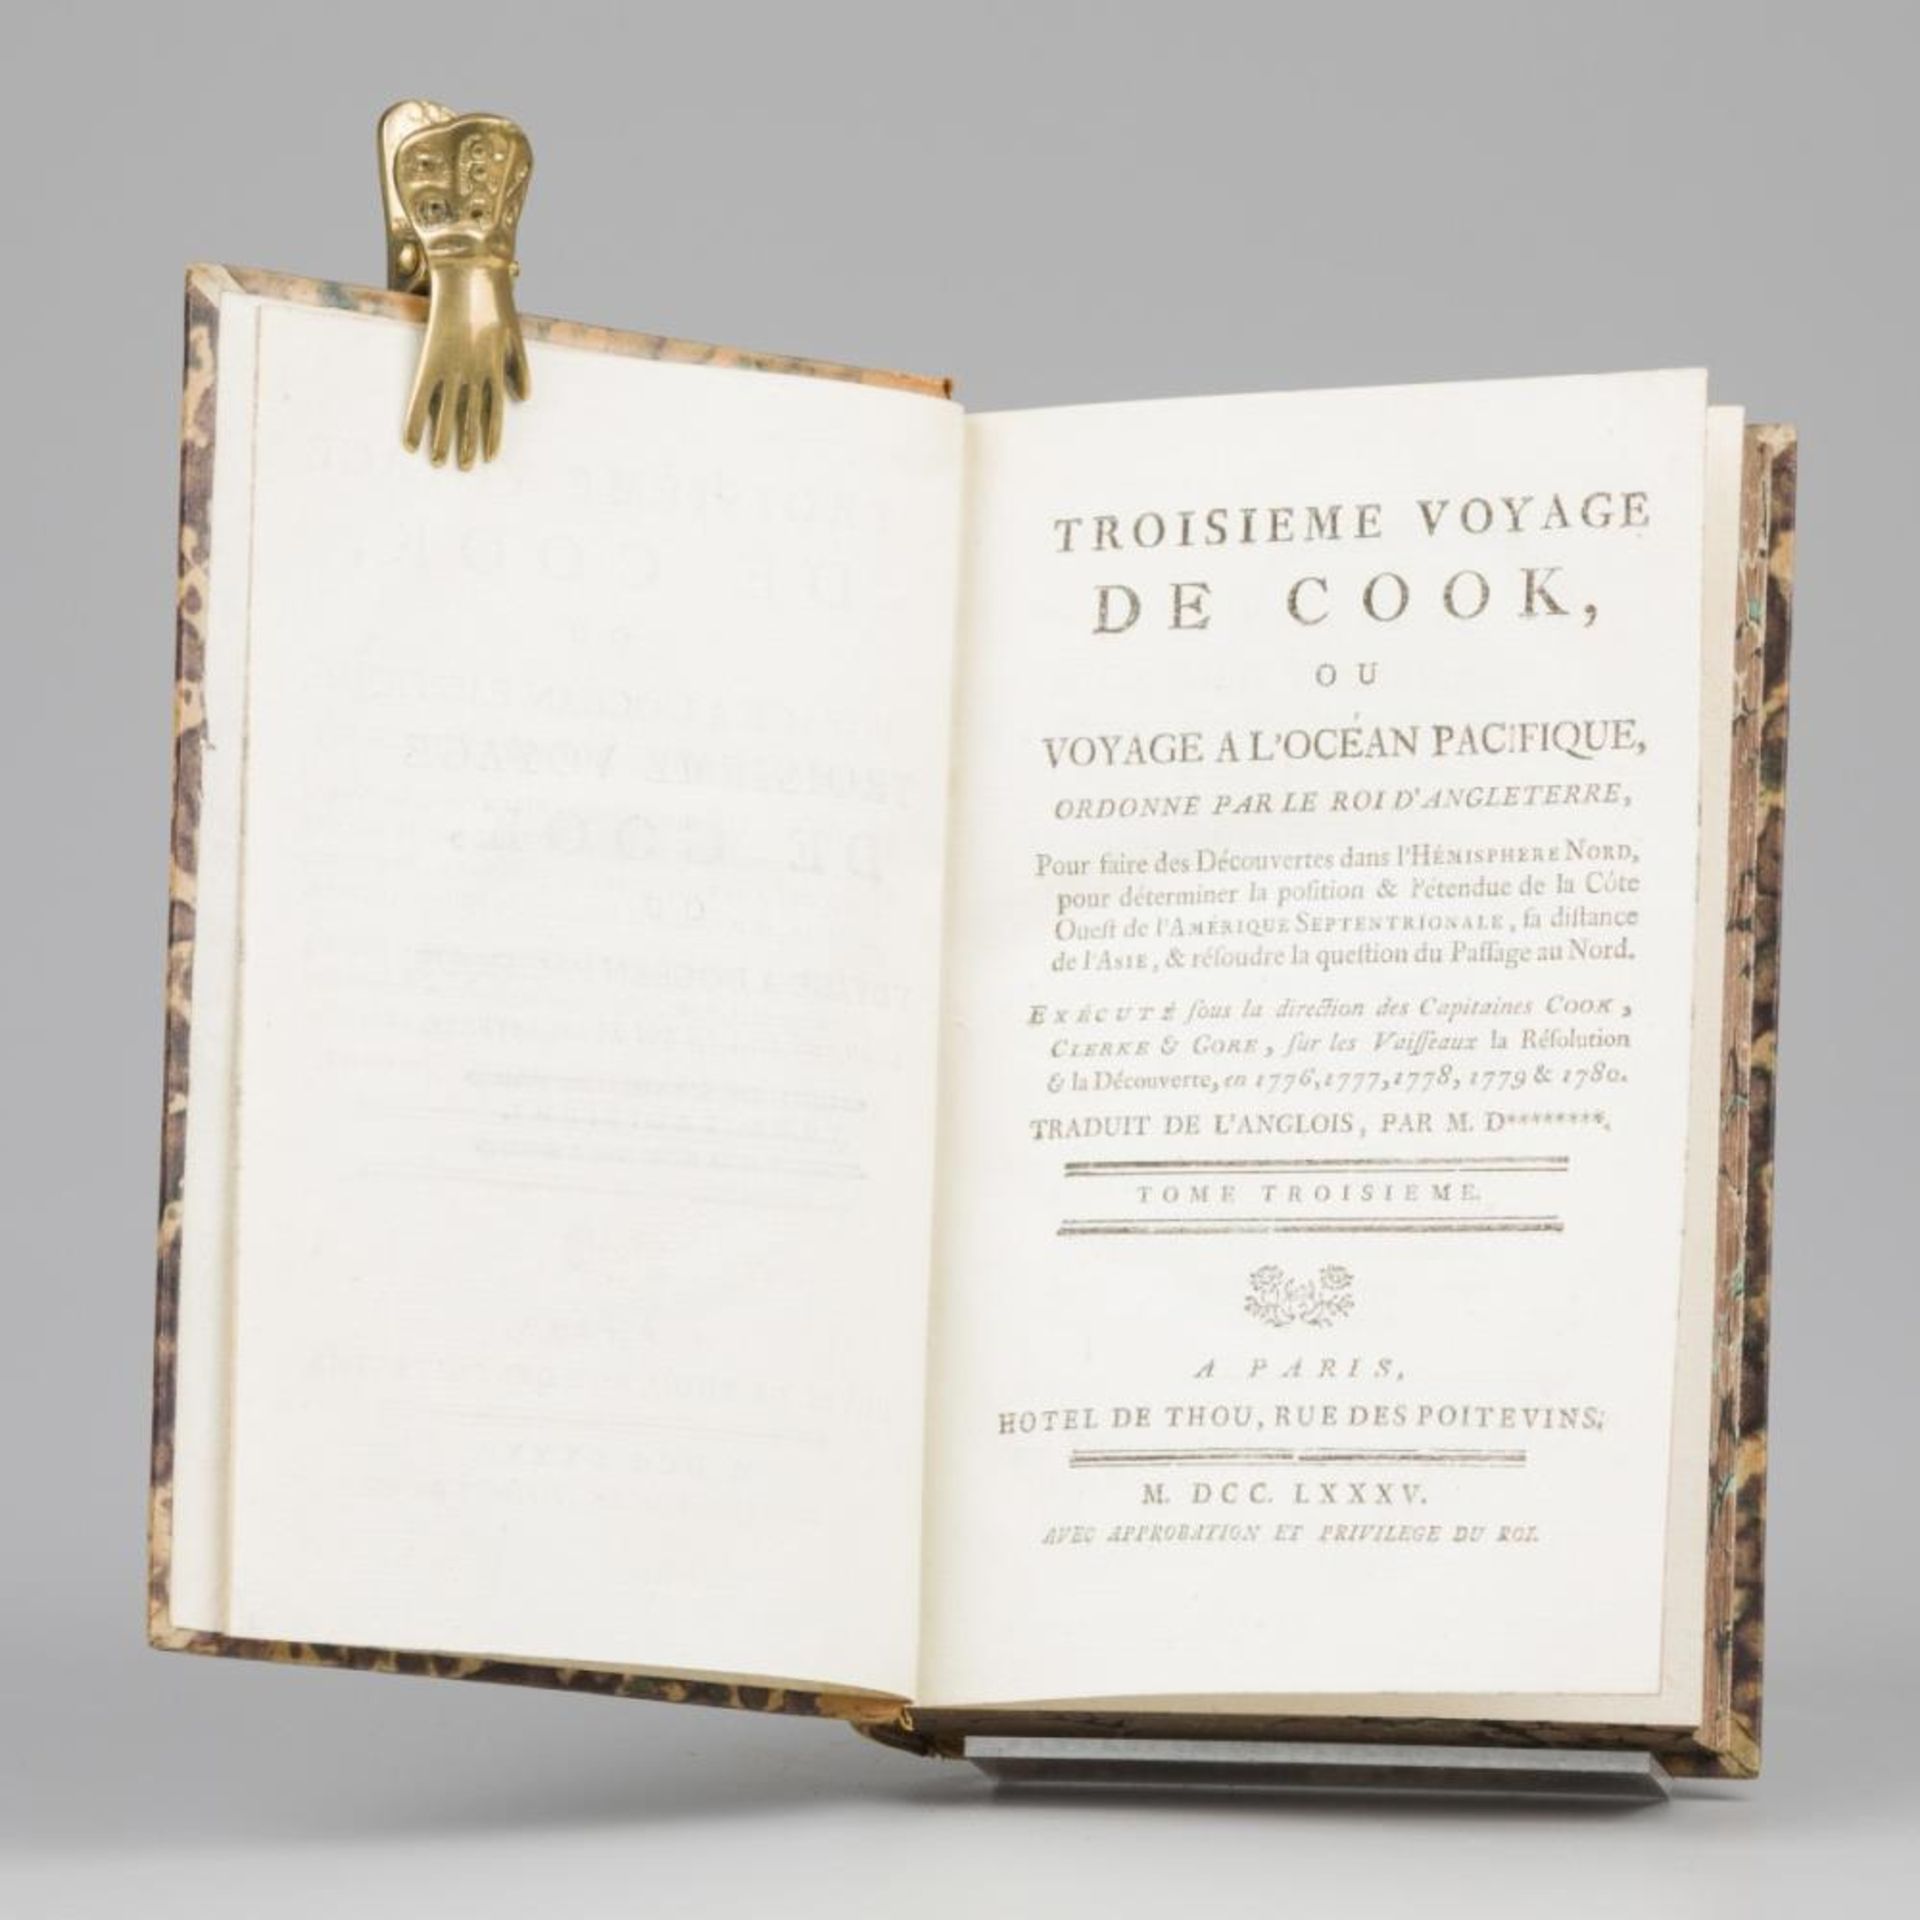 James Cook (1728 – 1779), Troisième Voyage de Cook, Hôtel de Thou, Parijs, 1785. - Bild 8 aus 12